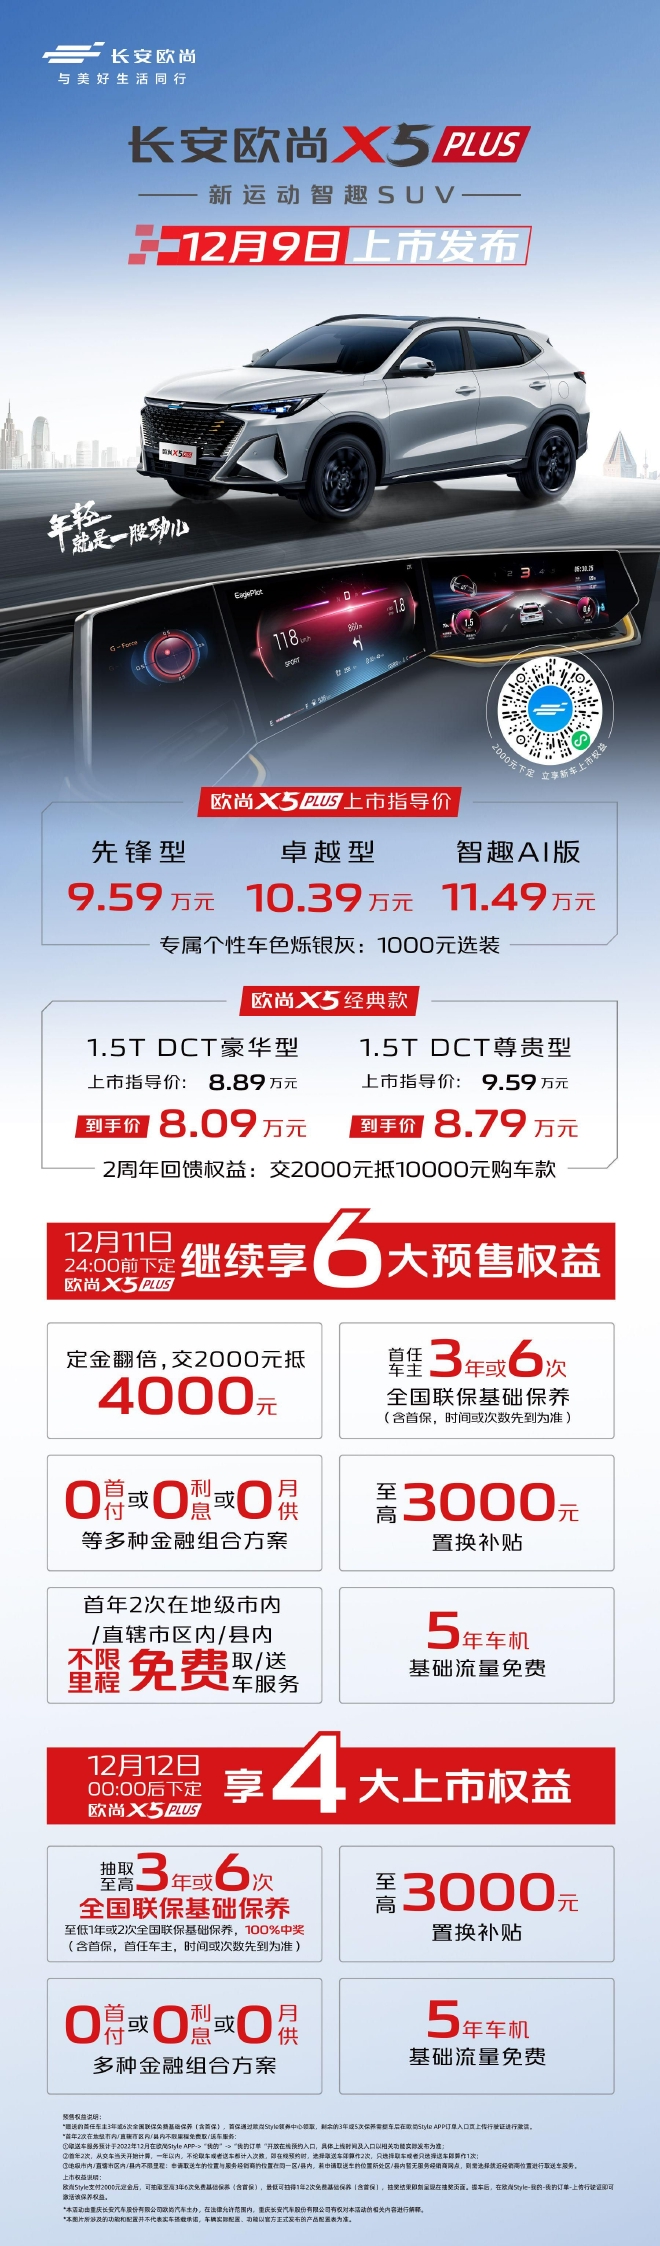 长安欧尚X5 PLUS正式上市 售价9.59-11.49万